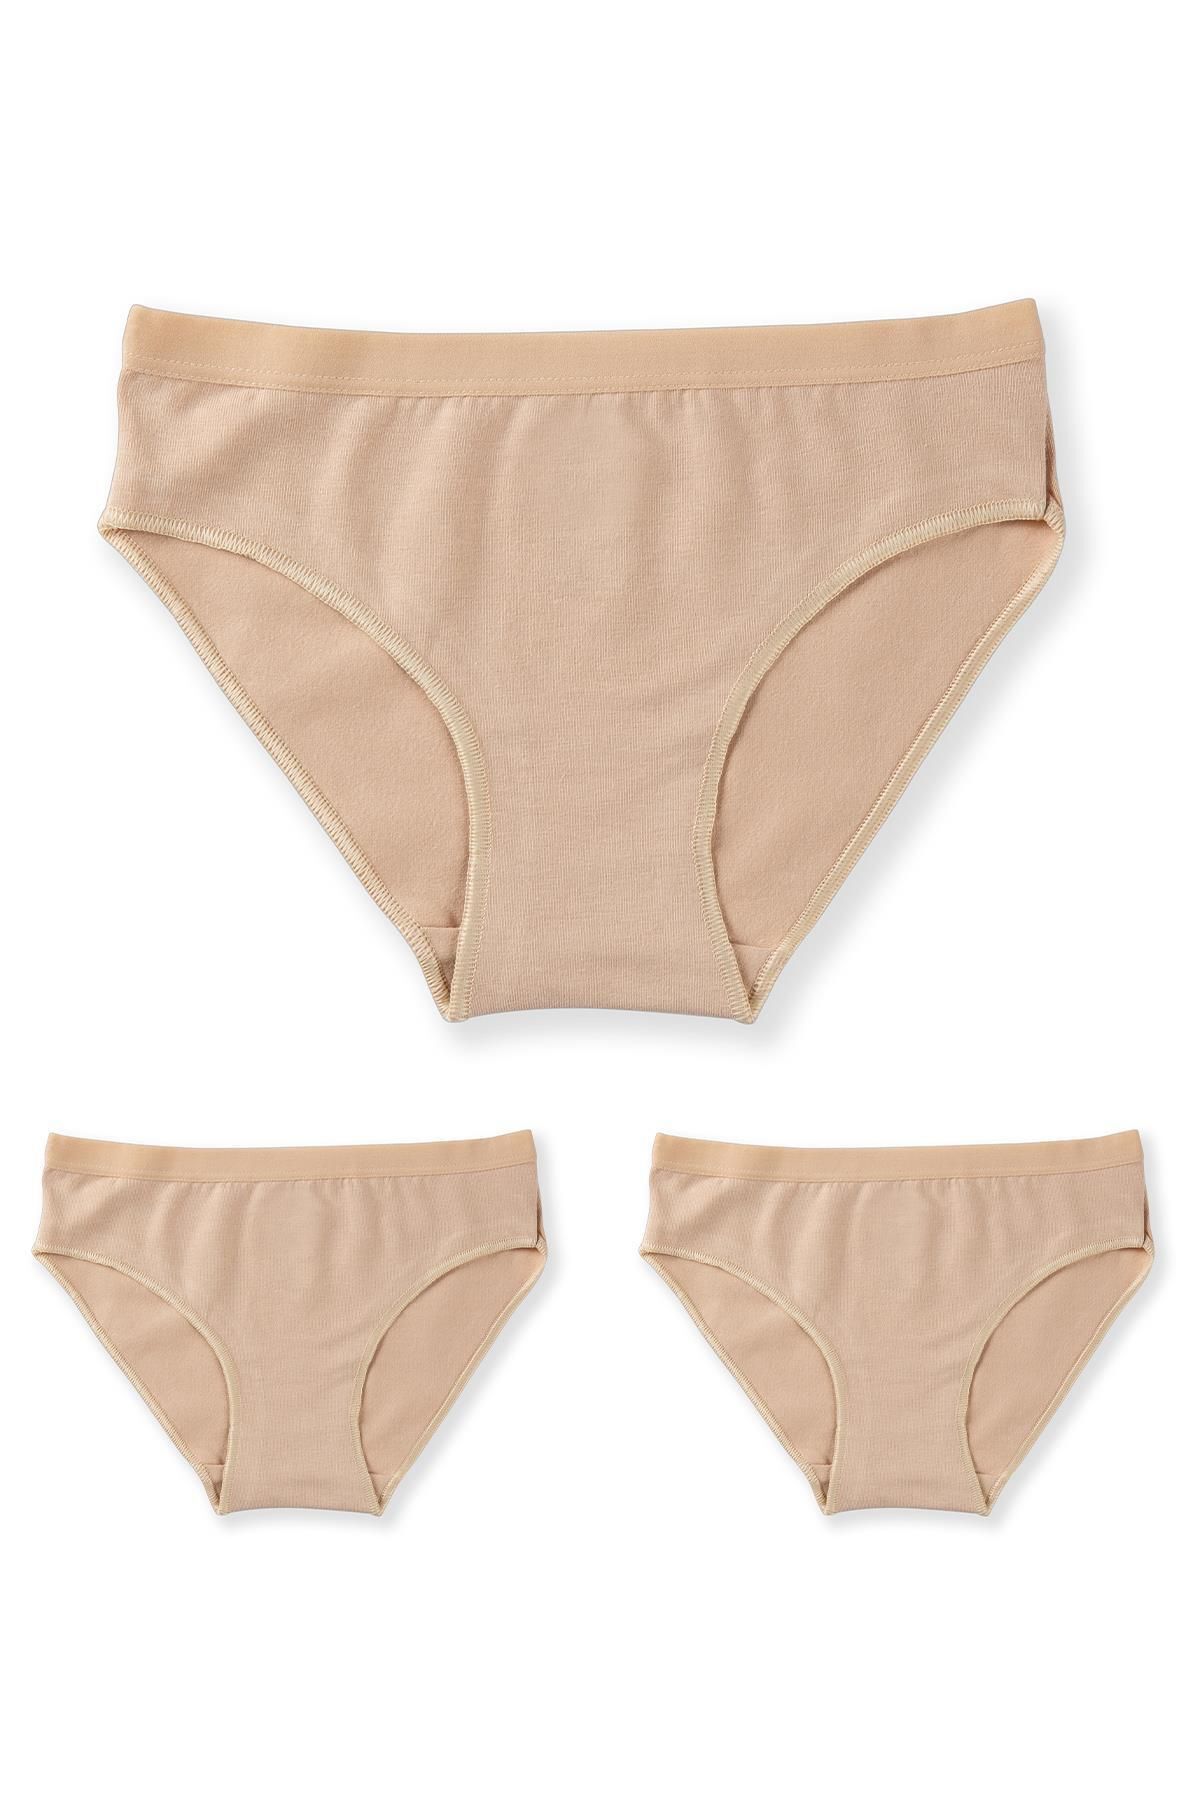 BAYKAR Kız Çocuk Pamuklu Bikini Kesim Düz Basic Külot 3'lü Paket 5005 Ten Rengi 5005-3